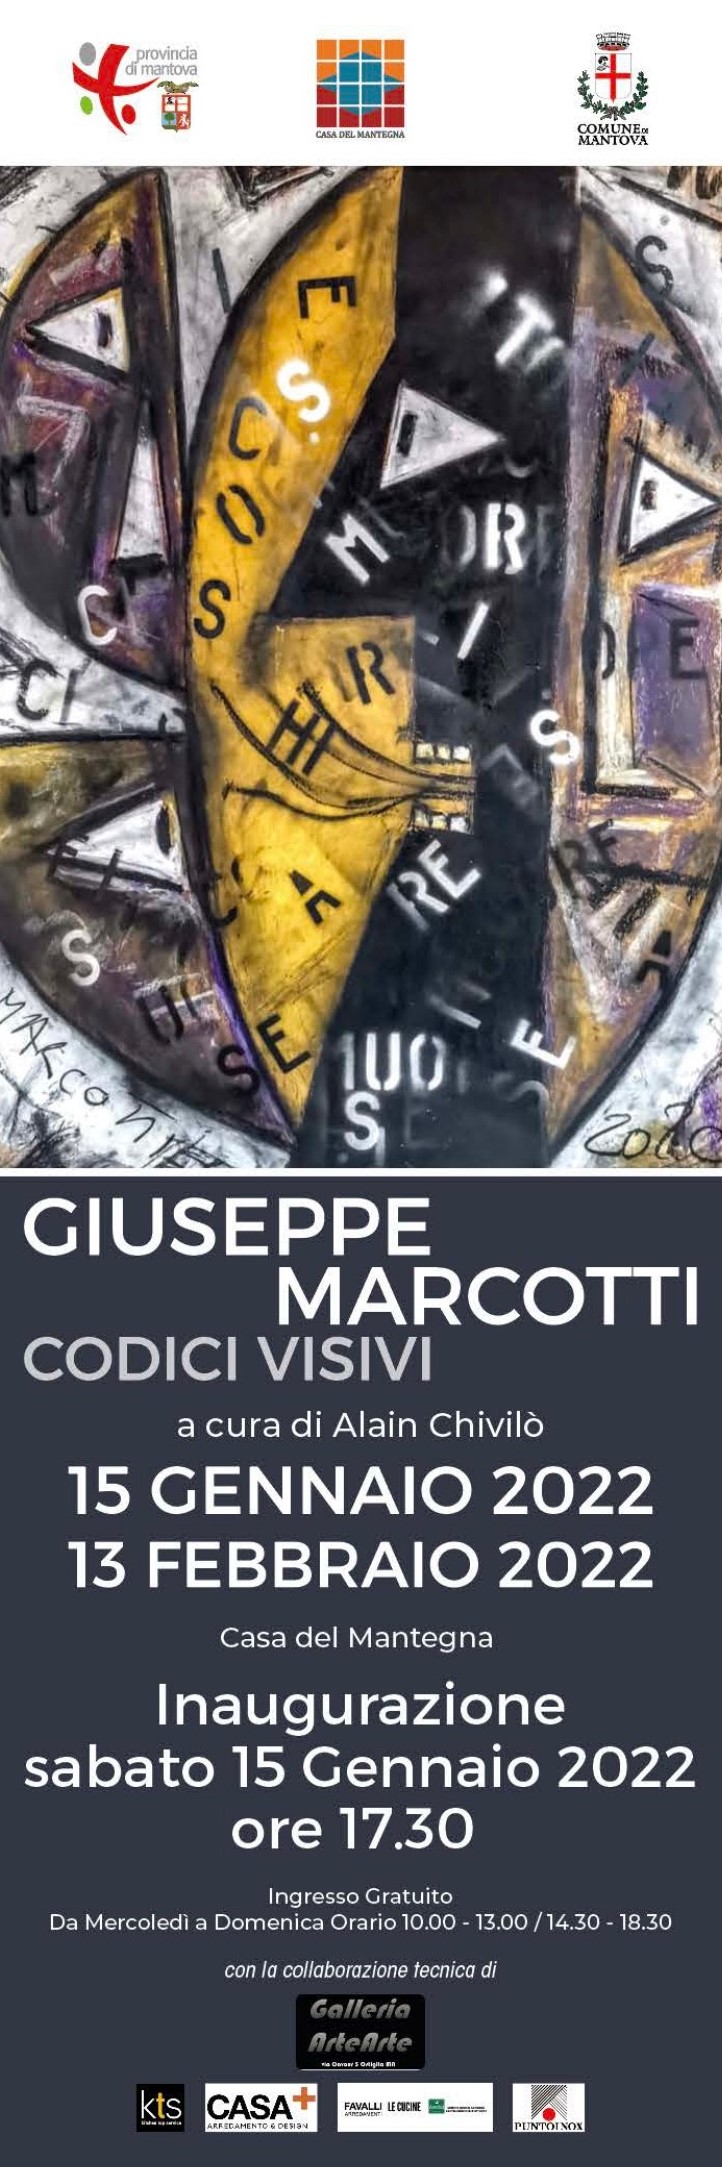 Giuseppe Marcotti Codici Visivi a cura di Alain Chivilò